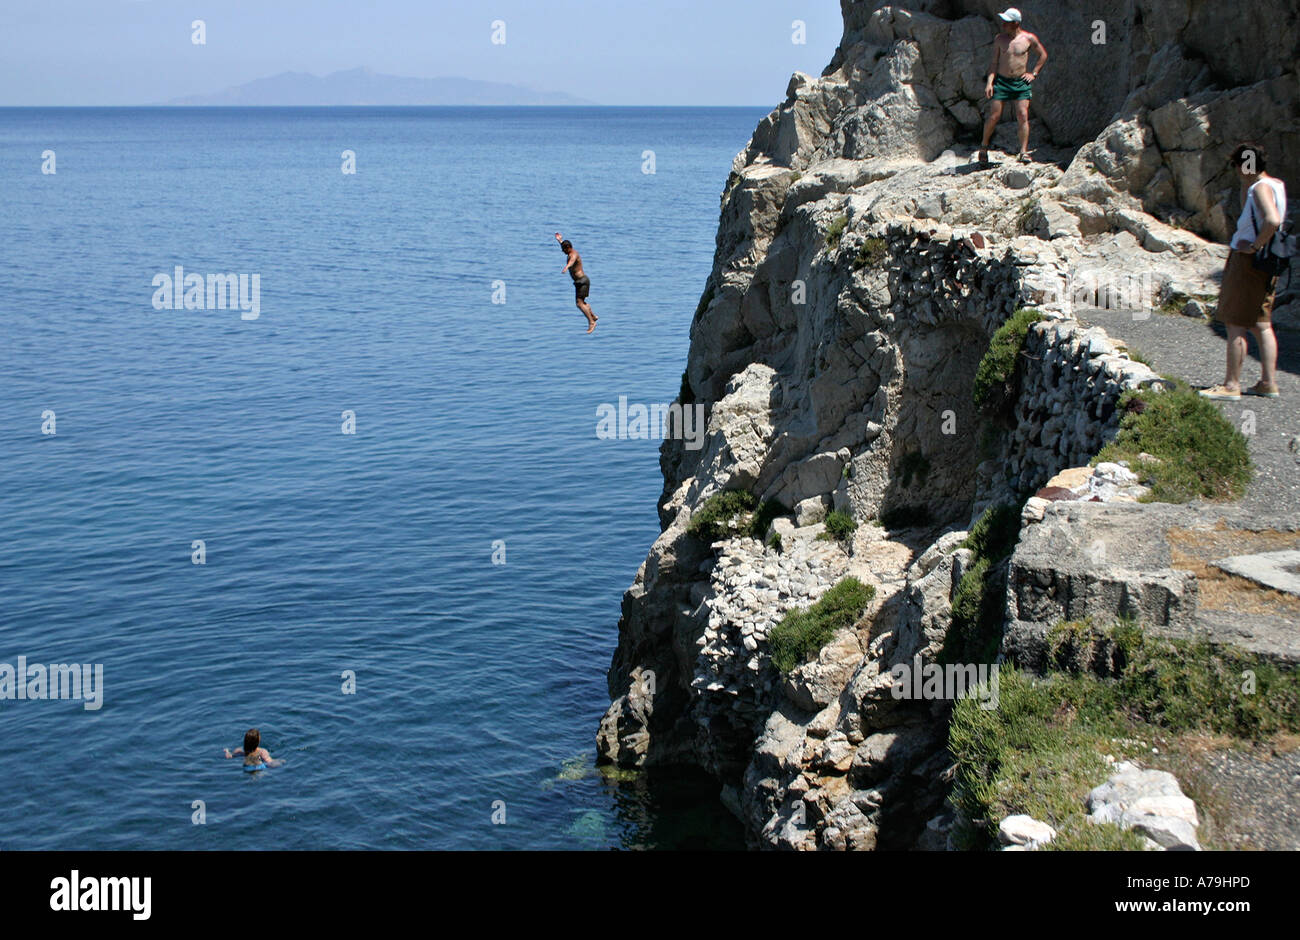 Erfrischender Sprung: Ein junger Mann von den Klippen springt ein Ende von Kamari Beach in die dunklen blauen Wasser ein Frau hat nur vorausgegangen Stockfoto